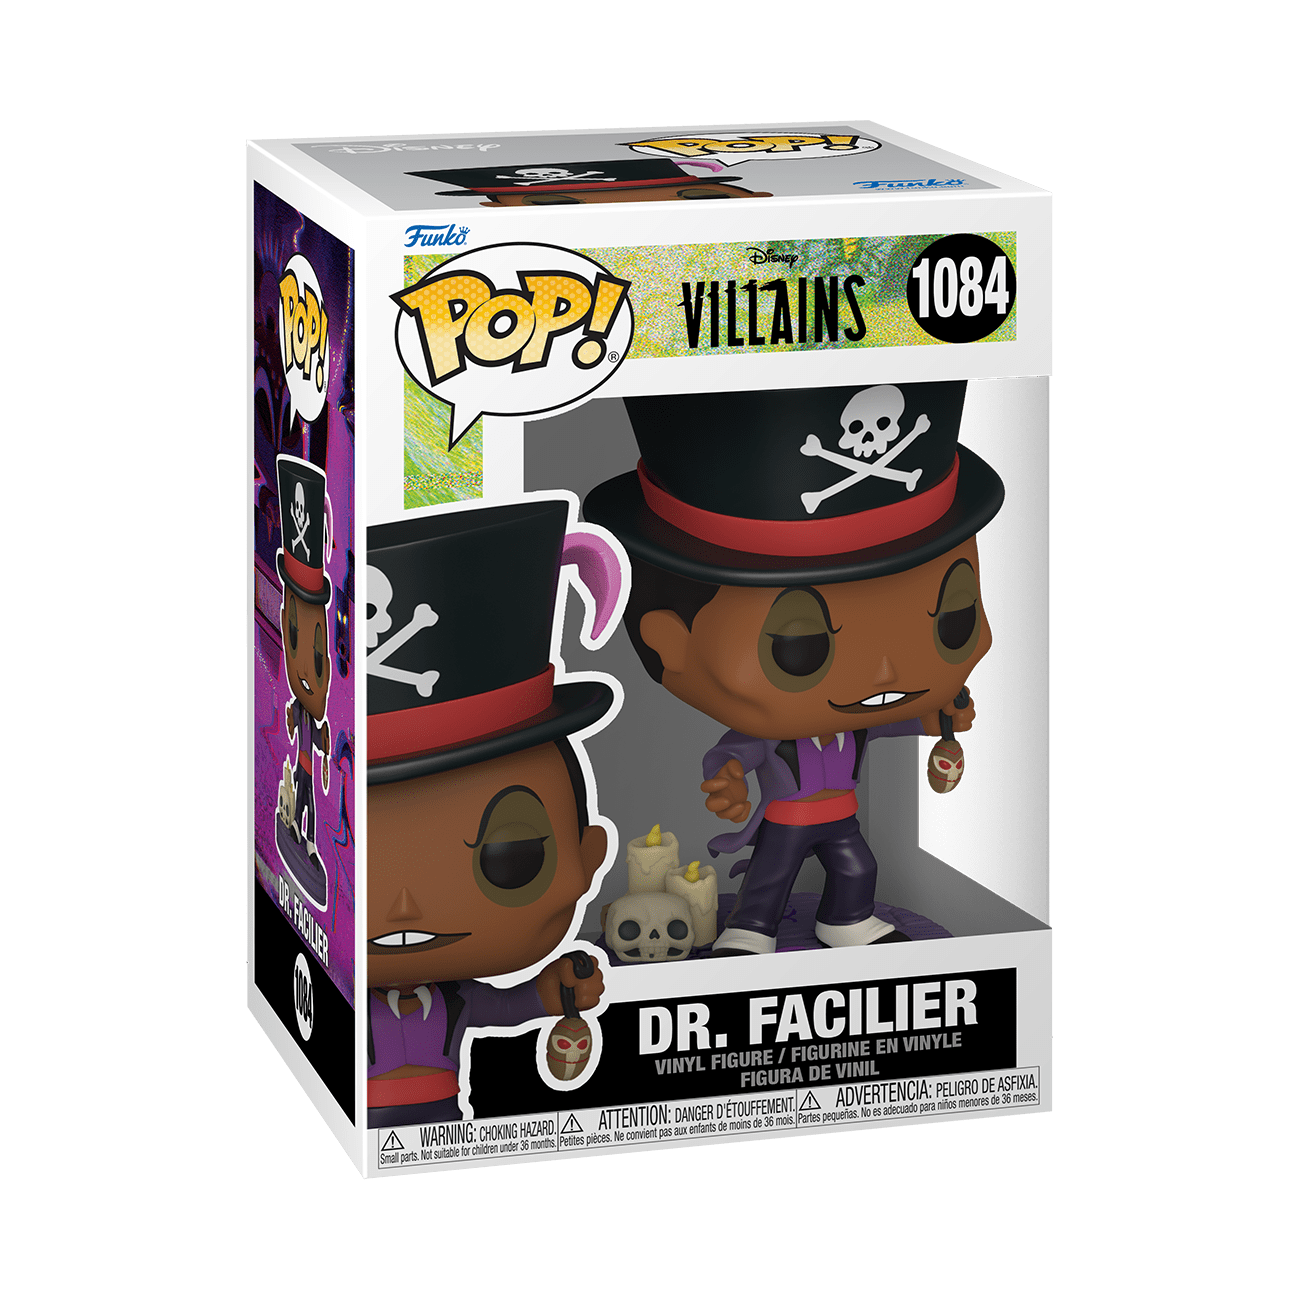 Funko Disney Villains Dr. Facilier Pop! Vinyl Figure